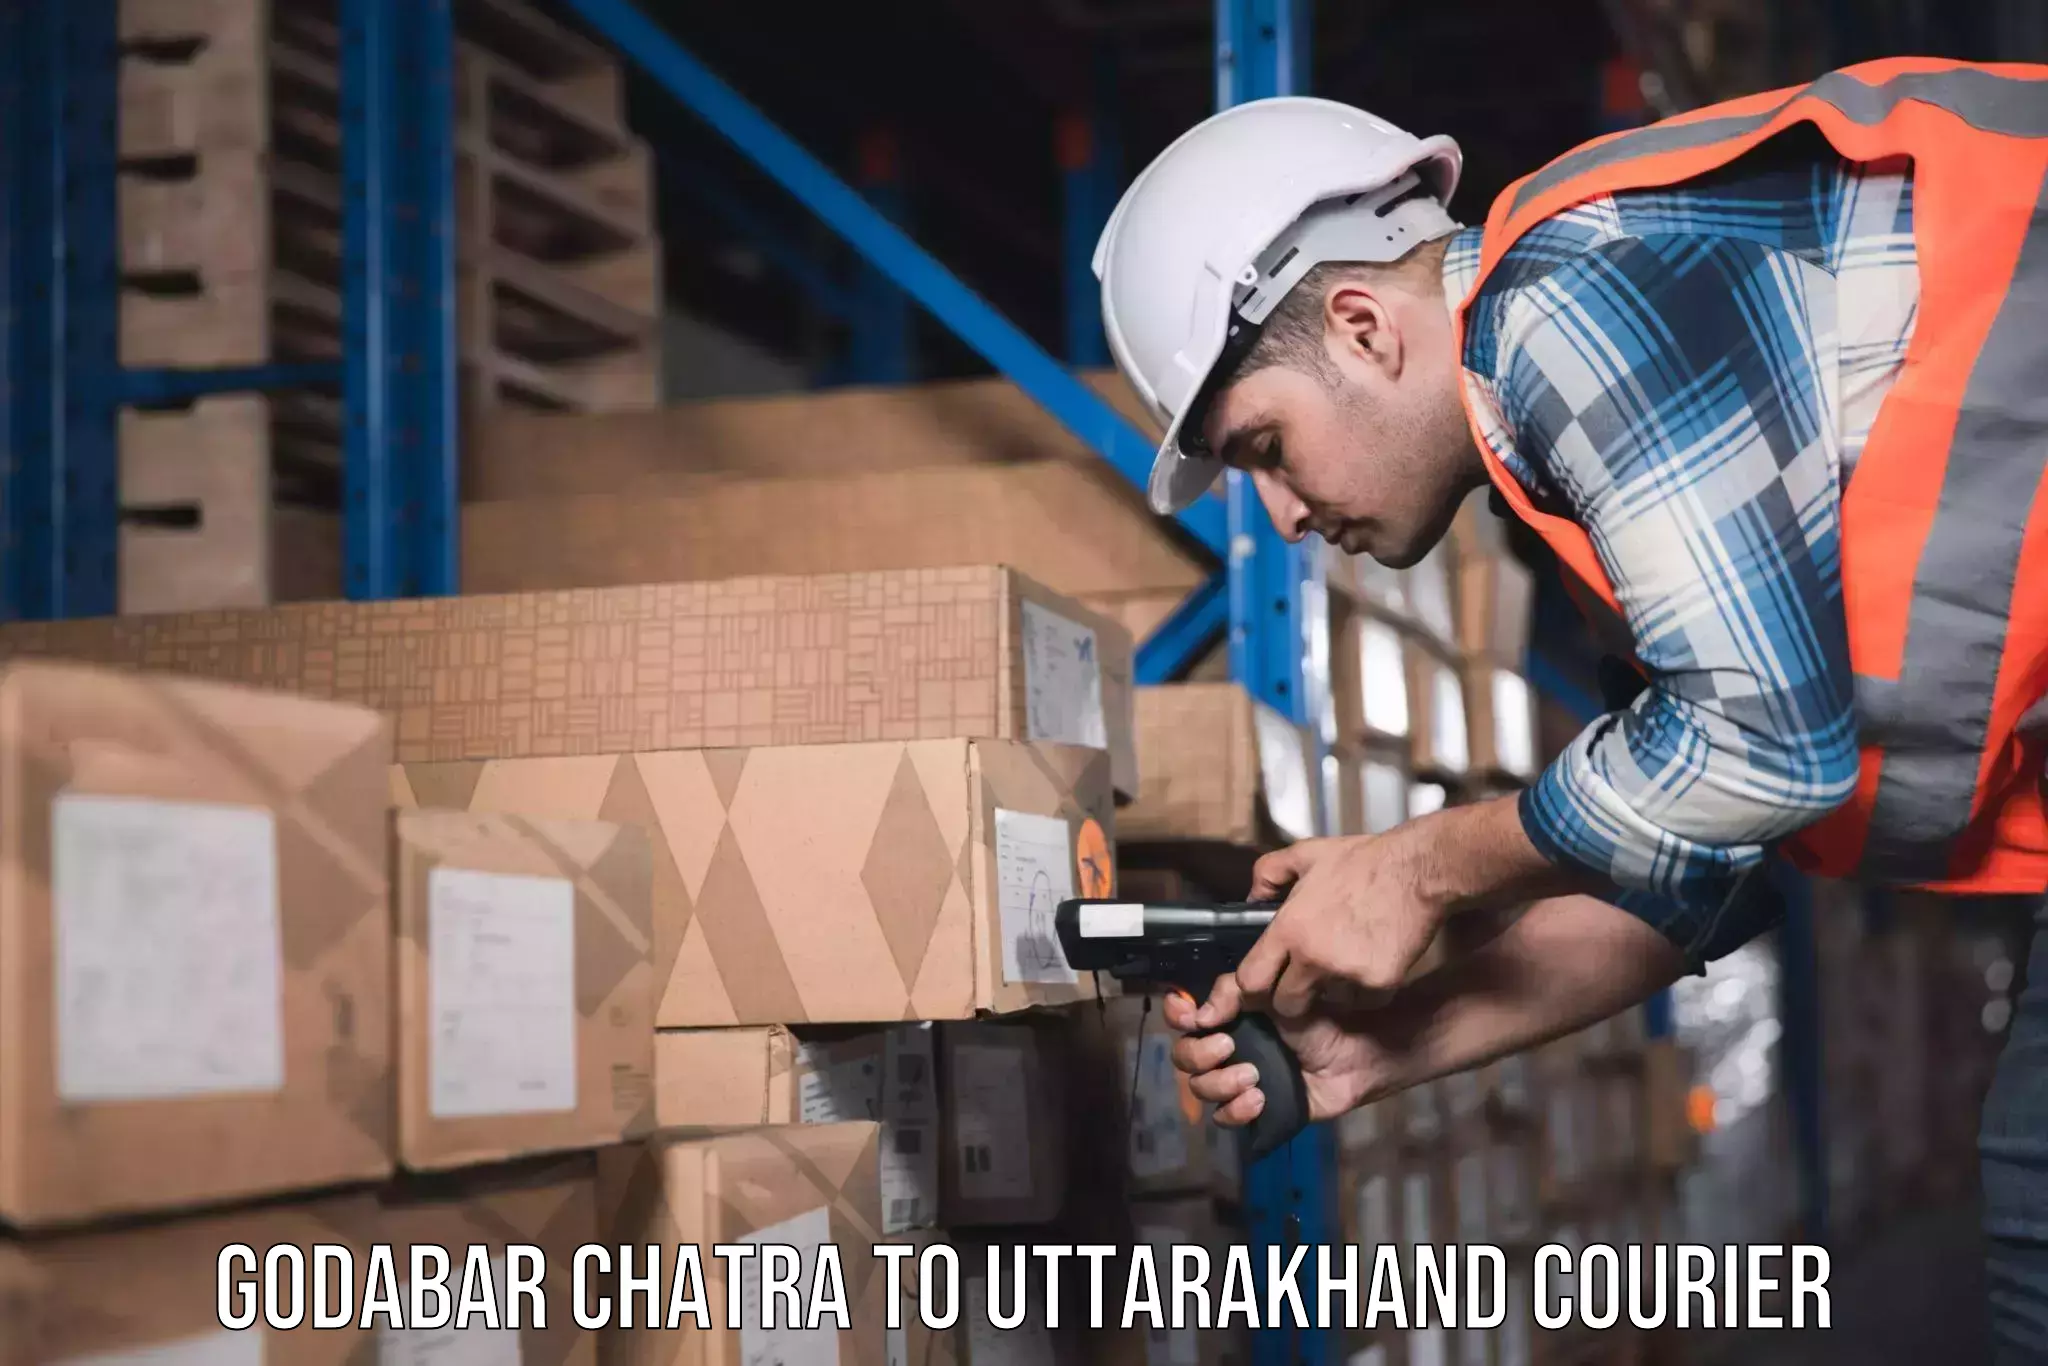 Household moving experts Godabar Chatra to Uttarakhand